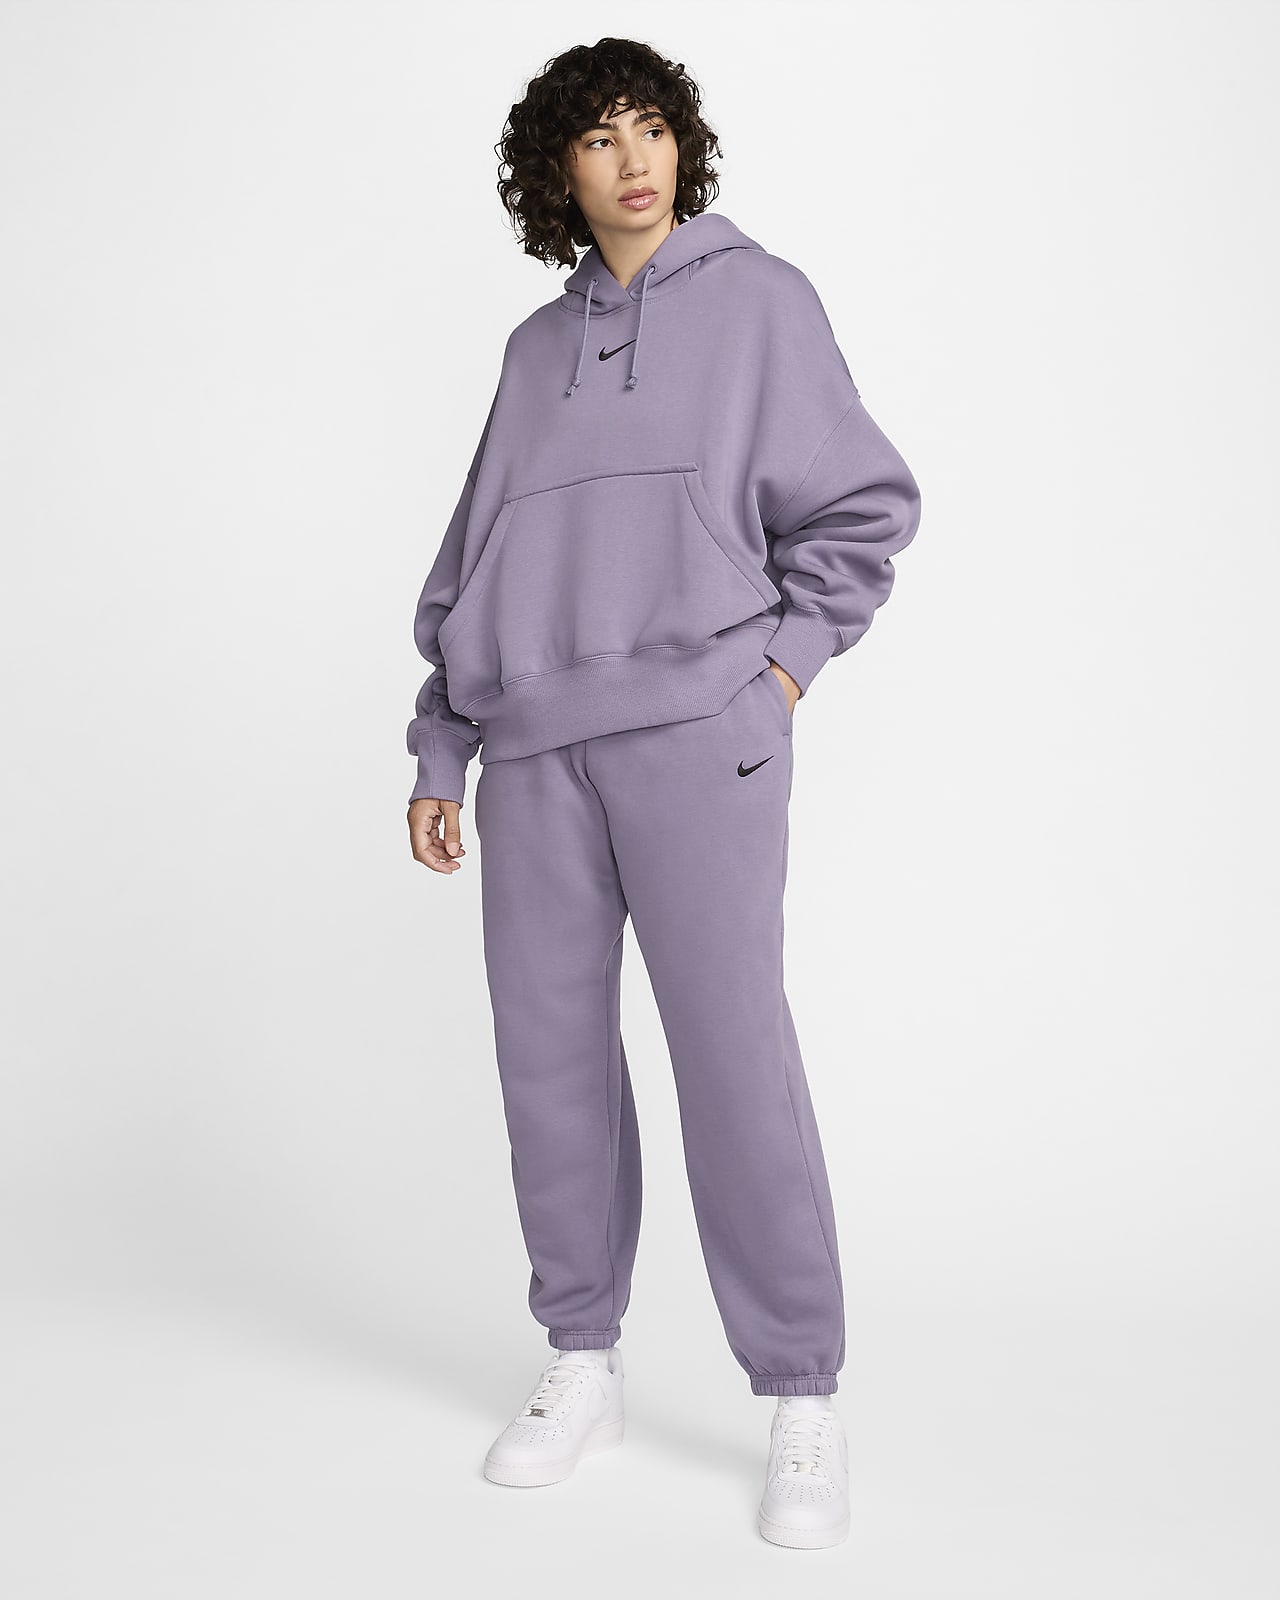 NIKE Women's Nike Sportswear Phoenix Fleece Pullover Hoodie